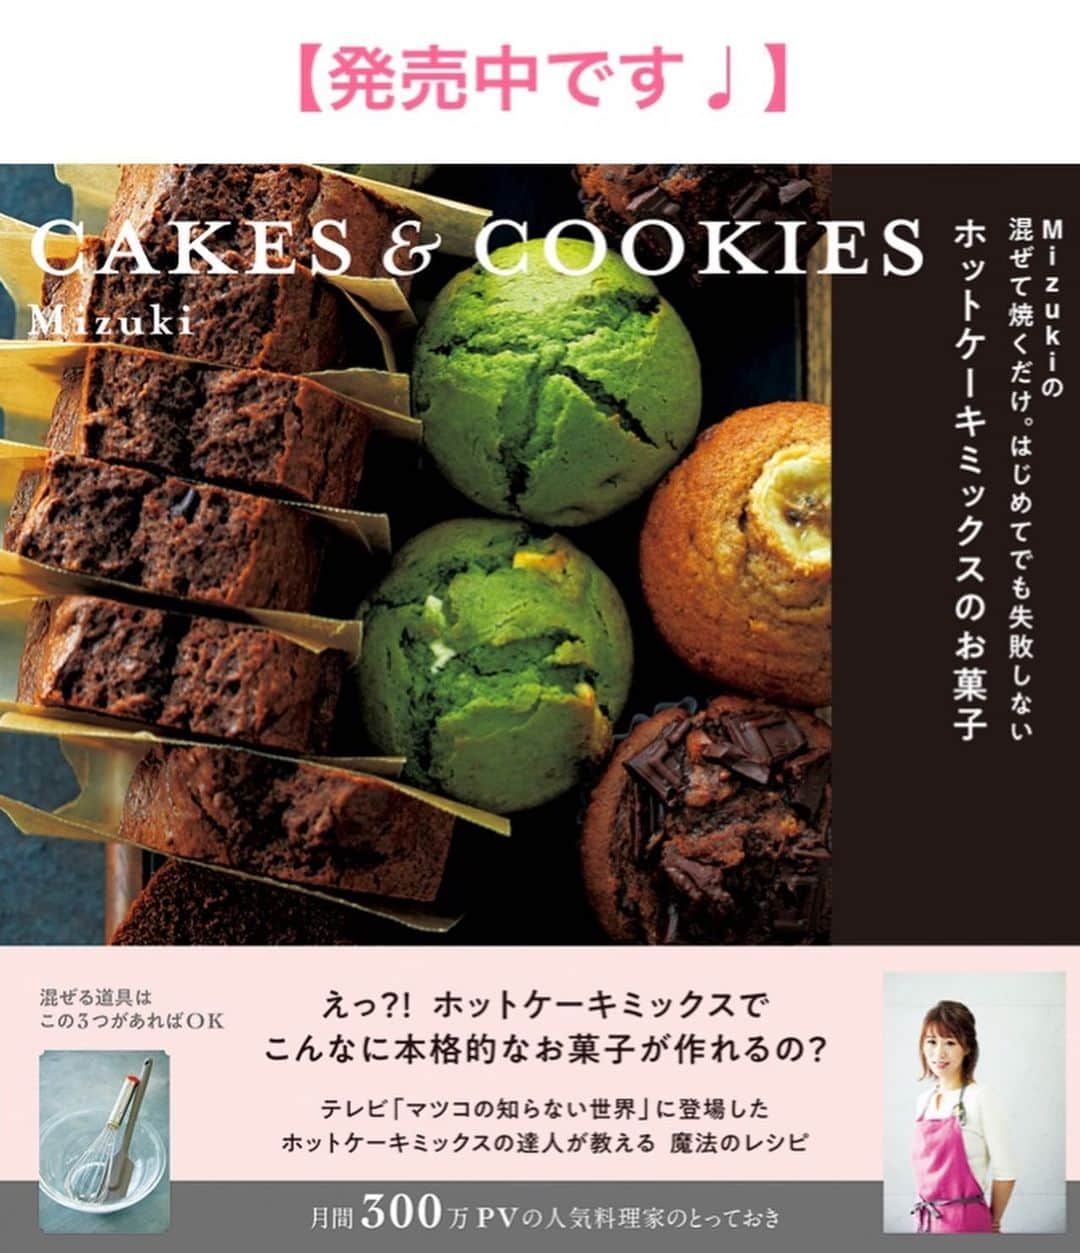 Mizuki【料理ブロガー・簡単レシピ】さんのインスタグラム写真 - (Mizuki【料理ブロガー・簡単レシピ】Instagram)「・﻿ 【レシピ】ーーーーーーーー﻿ ホットケーキミックスで！﻿ ♡オイルバナナマフィン♡﻿ ーーーーーーーーーーーーー﻿ ﻿ ﻿ ﻿ おはようございます(*^^*)﻿ ﻿ 今日ご紹介させていただくのは﻿ ホケミで作るオイルバナナマフィン♡﻿ バターなしでお手軽♩﻿ しかも混ぜて焼くだけの﻿ 超〜簡単レシピです(*´艸`)﻿ ﻿ 前にも似たのをご紹介していますが﻿ (タイトル同じ😂㊙︎)﻿ 今回はバナナ1本、卵1個の最小限バージョン♩﻿ これ、申し訳ないくらい簡単なのに﻿ とっても美味しくできるので﻿ よかったらお試し下さいね(*^^*)﻿ ﻿ ﻿ ﻿ ーーーーーーーーーーーーーーーーーーーー﻿ 【マフィン型1台(6個)分】﻿ バナナ...1本(皮付き130g)﻿ ●卵...1個﻿ ●砂糖...大3﻿ ●牛乳...60ml﻿ ●サラダ油...60g﻿ ☆ホットケーキミックス...150g﻿ ☆(好みで)シナモンパウダー...少々﻿ ﻿ (準備)型にグラシンカップを敷く。オーブンを180度に予熱する。﻿ 1.ボウルにバナナを入れてフォークで潰す。●を加えてよく混ぜ、続けて☆を加えて更に混ぜる。﻿ 2.型に注ぎ、予熱したオーブンで20分焼く。﻿ ーーーーーーーーーーーーーーーーーーーー﻿ ﻿ ﻿ ﻿ 《ポイント》﻿ ♦︎バナナの潰し具合はお好みで♩﻿ ♦︎ホットケーキミックスを加えたら粉っぽさがなくなる程度に混ぜて下さい♩﻿ ♦︎焼けたら型から取り出し、アミにのせて冷まして下さい♩﻿ ﻿ ﻿ ﻿ ﻿ ﻿ ﻿ ＿＿＿＿＿＿＿＿＿＿＿＿＿＿＿＿＿﻿ 🎀6刷重版しました🎀﻿ 混ぜて焼くだけ。はじめてでも失敗しない！﻿ 【#ホットケーキミックスのお菓子 】﻿ ﻿ 一冊まるっとホケミスイーツ♩﻿ 普段のおやつから﻿ 特別な日にも使えるレシピを﻿ この一冊に詰め込みました(*^^*)﻿ ホットケーキミックスを使えば﻿ 簡単に本格的なお菓子が作れますよ♡﻿ ＿＿＿＿＿＿＿＿＿＿＿＿＿＿＿＿＿﻿ ﻿ ﻿ ﻿ ＿＿＿＿＿＿＿＿＿＿＿＿＿＿＿＿＿＿＿﻿ 📕6刷重版しました📕﻿ 簡単・時短！ 毎日のごはんがラクになる﻿ ✨🦋 【 #Mizukiの今どき和食 】🦋✨﻿ ＿＿＿＿＿＿＿＿＿＿＿＿＿＿＿＿＿＿＿﻿ なるべく少ない材料で﻿ 手間も時間も省きながら﻿ 簡単にできるおいしい和食レシピ♩﻿ 簡単に失敗なくマスターできる一冊で﻿ もっと気軽に、カジュアルに﻿ 和食を楽しんで下さいね(*^^*)﻿ ＿＿＿＿＿＿＿＿＿＿＿＿＿＿＿＿＿＿＿﻿ ﻿ ⭐️ストーリー、ハイライト、プロフ画面に﻿ 本のURLを貼らせていただいております♩﻿ →(@mizuki_31cafe )﻿ ﻿ ﻿ ﻿ ﻿ #ホットケーキミックス#バナナ#マフィン#バターなし#オイルマフィン#Mizuki#簡単レシピ#時短レシピ#節約レシピ#料理#レシピ#フーディーテーブル#マカロニメイト#おうちごはん#デリスタグラマー#料理好きな人と繋がりたい#おうちごはん#写真好きな人と繋がりたい#お菓子作りならコッタlover#foodpic#cooking#recipe#lin_stagrammer#foodporn#yummy#オイルバナナマフィンm」7月18日 6時52分 - mizuki_31cafe